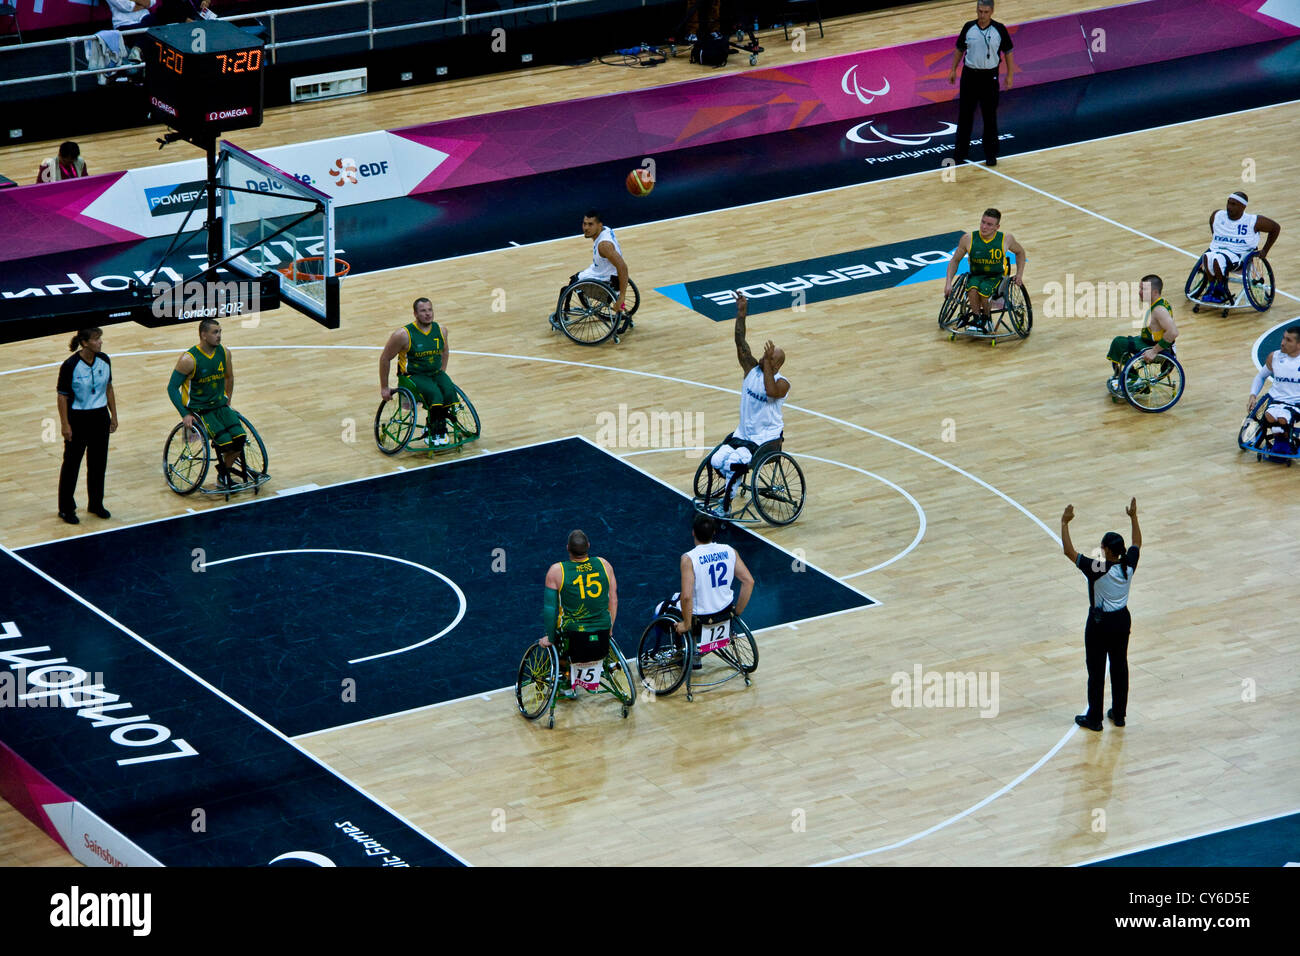 Mens Rollstuhl-Basketball-Gruppe ein Match zwischen Australien und Italien bei den Paralympics London 2012. Australien gewann 68-48. Stockfoto